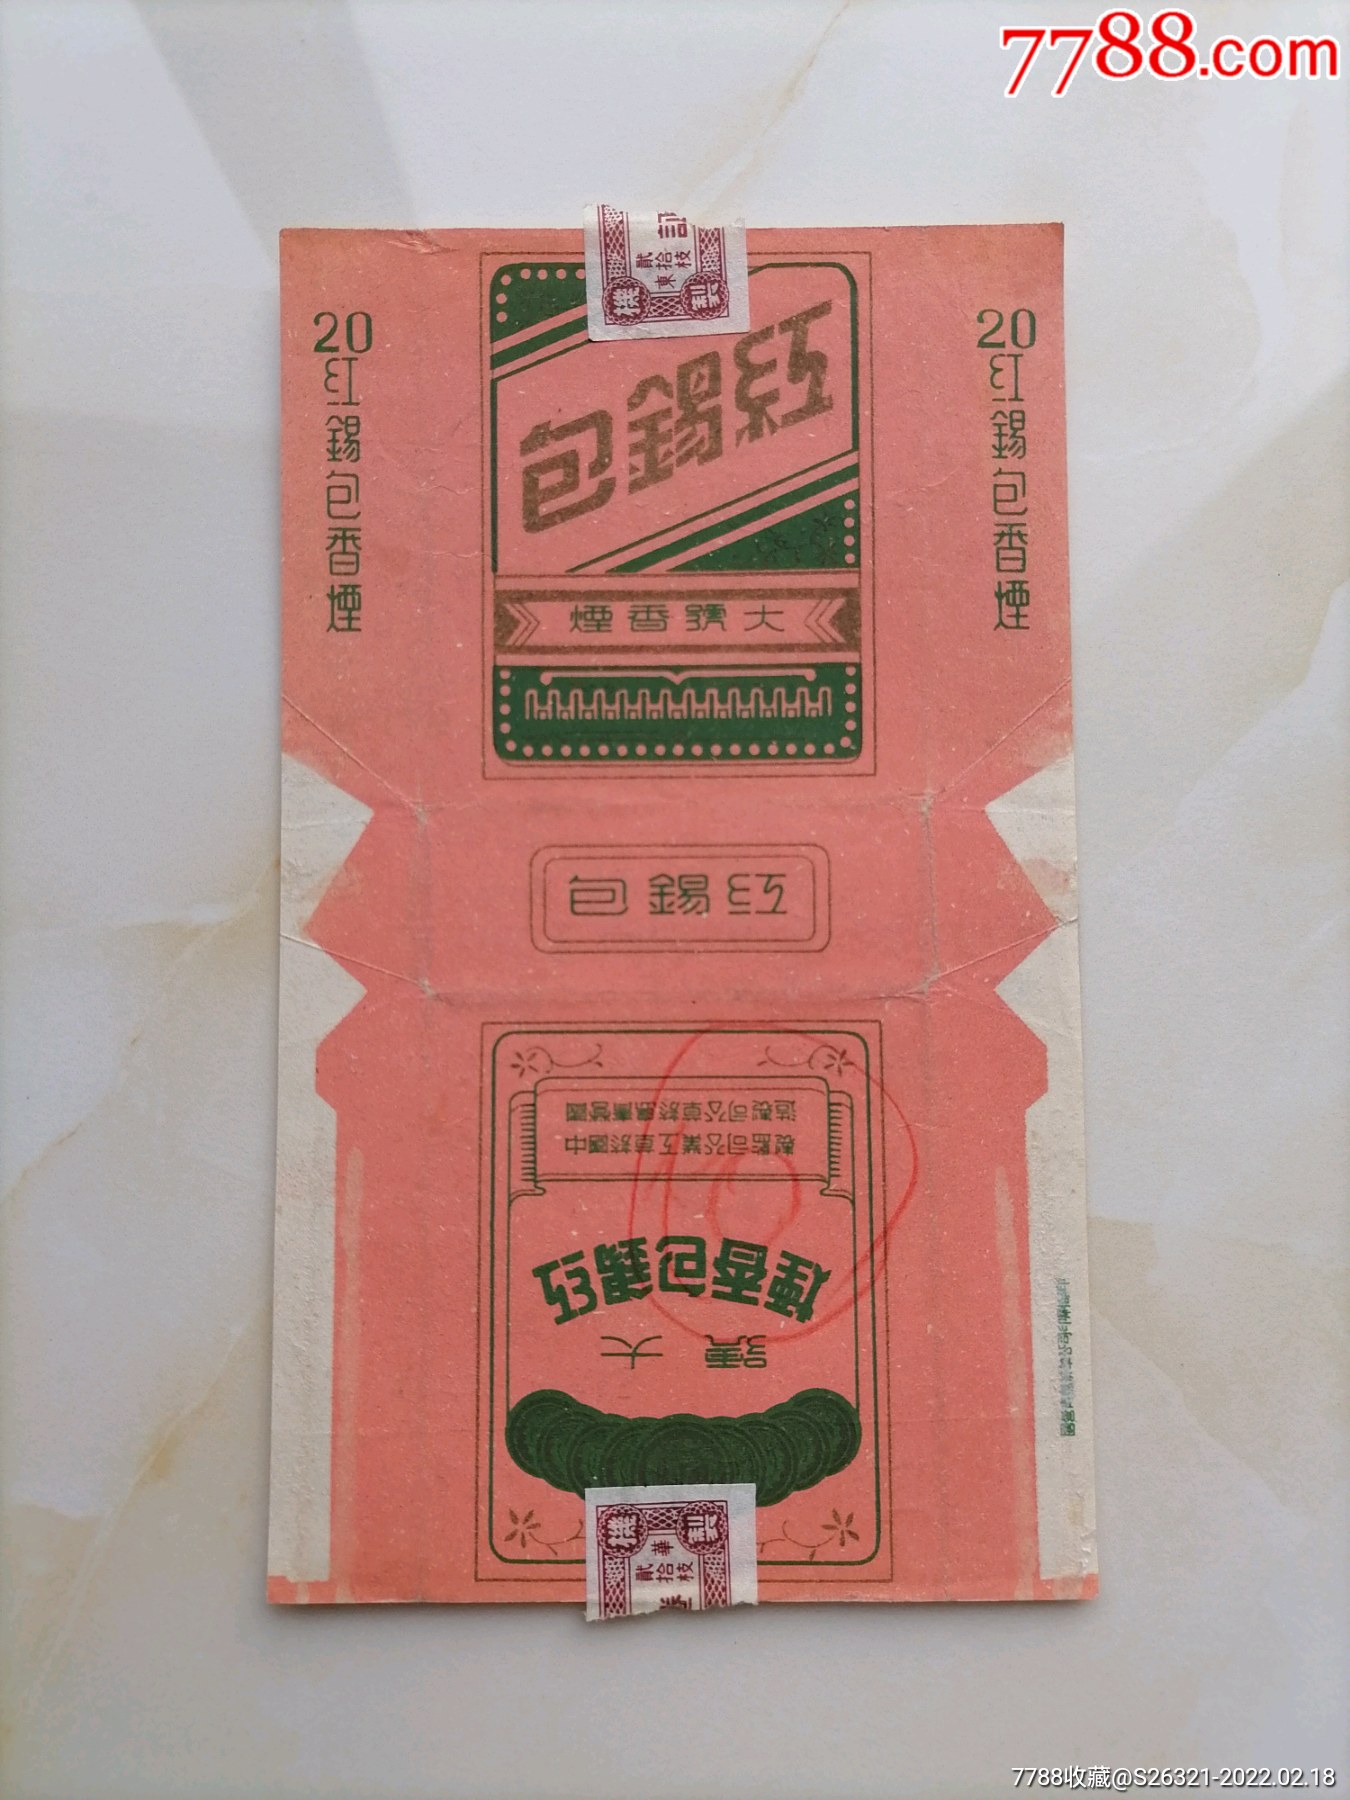 大号红锡包烟标中国烟草工业公司制国营青岛卷烟厂制造